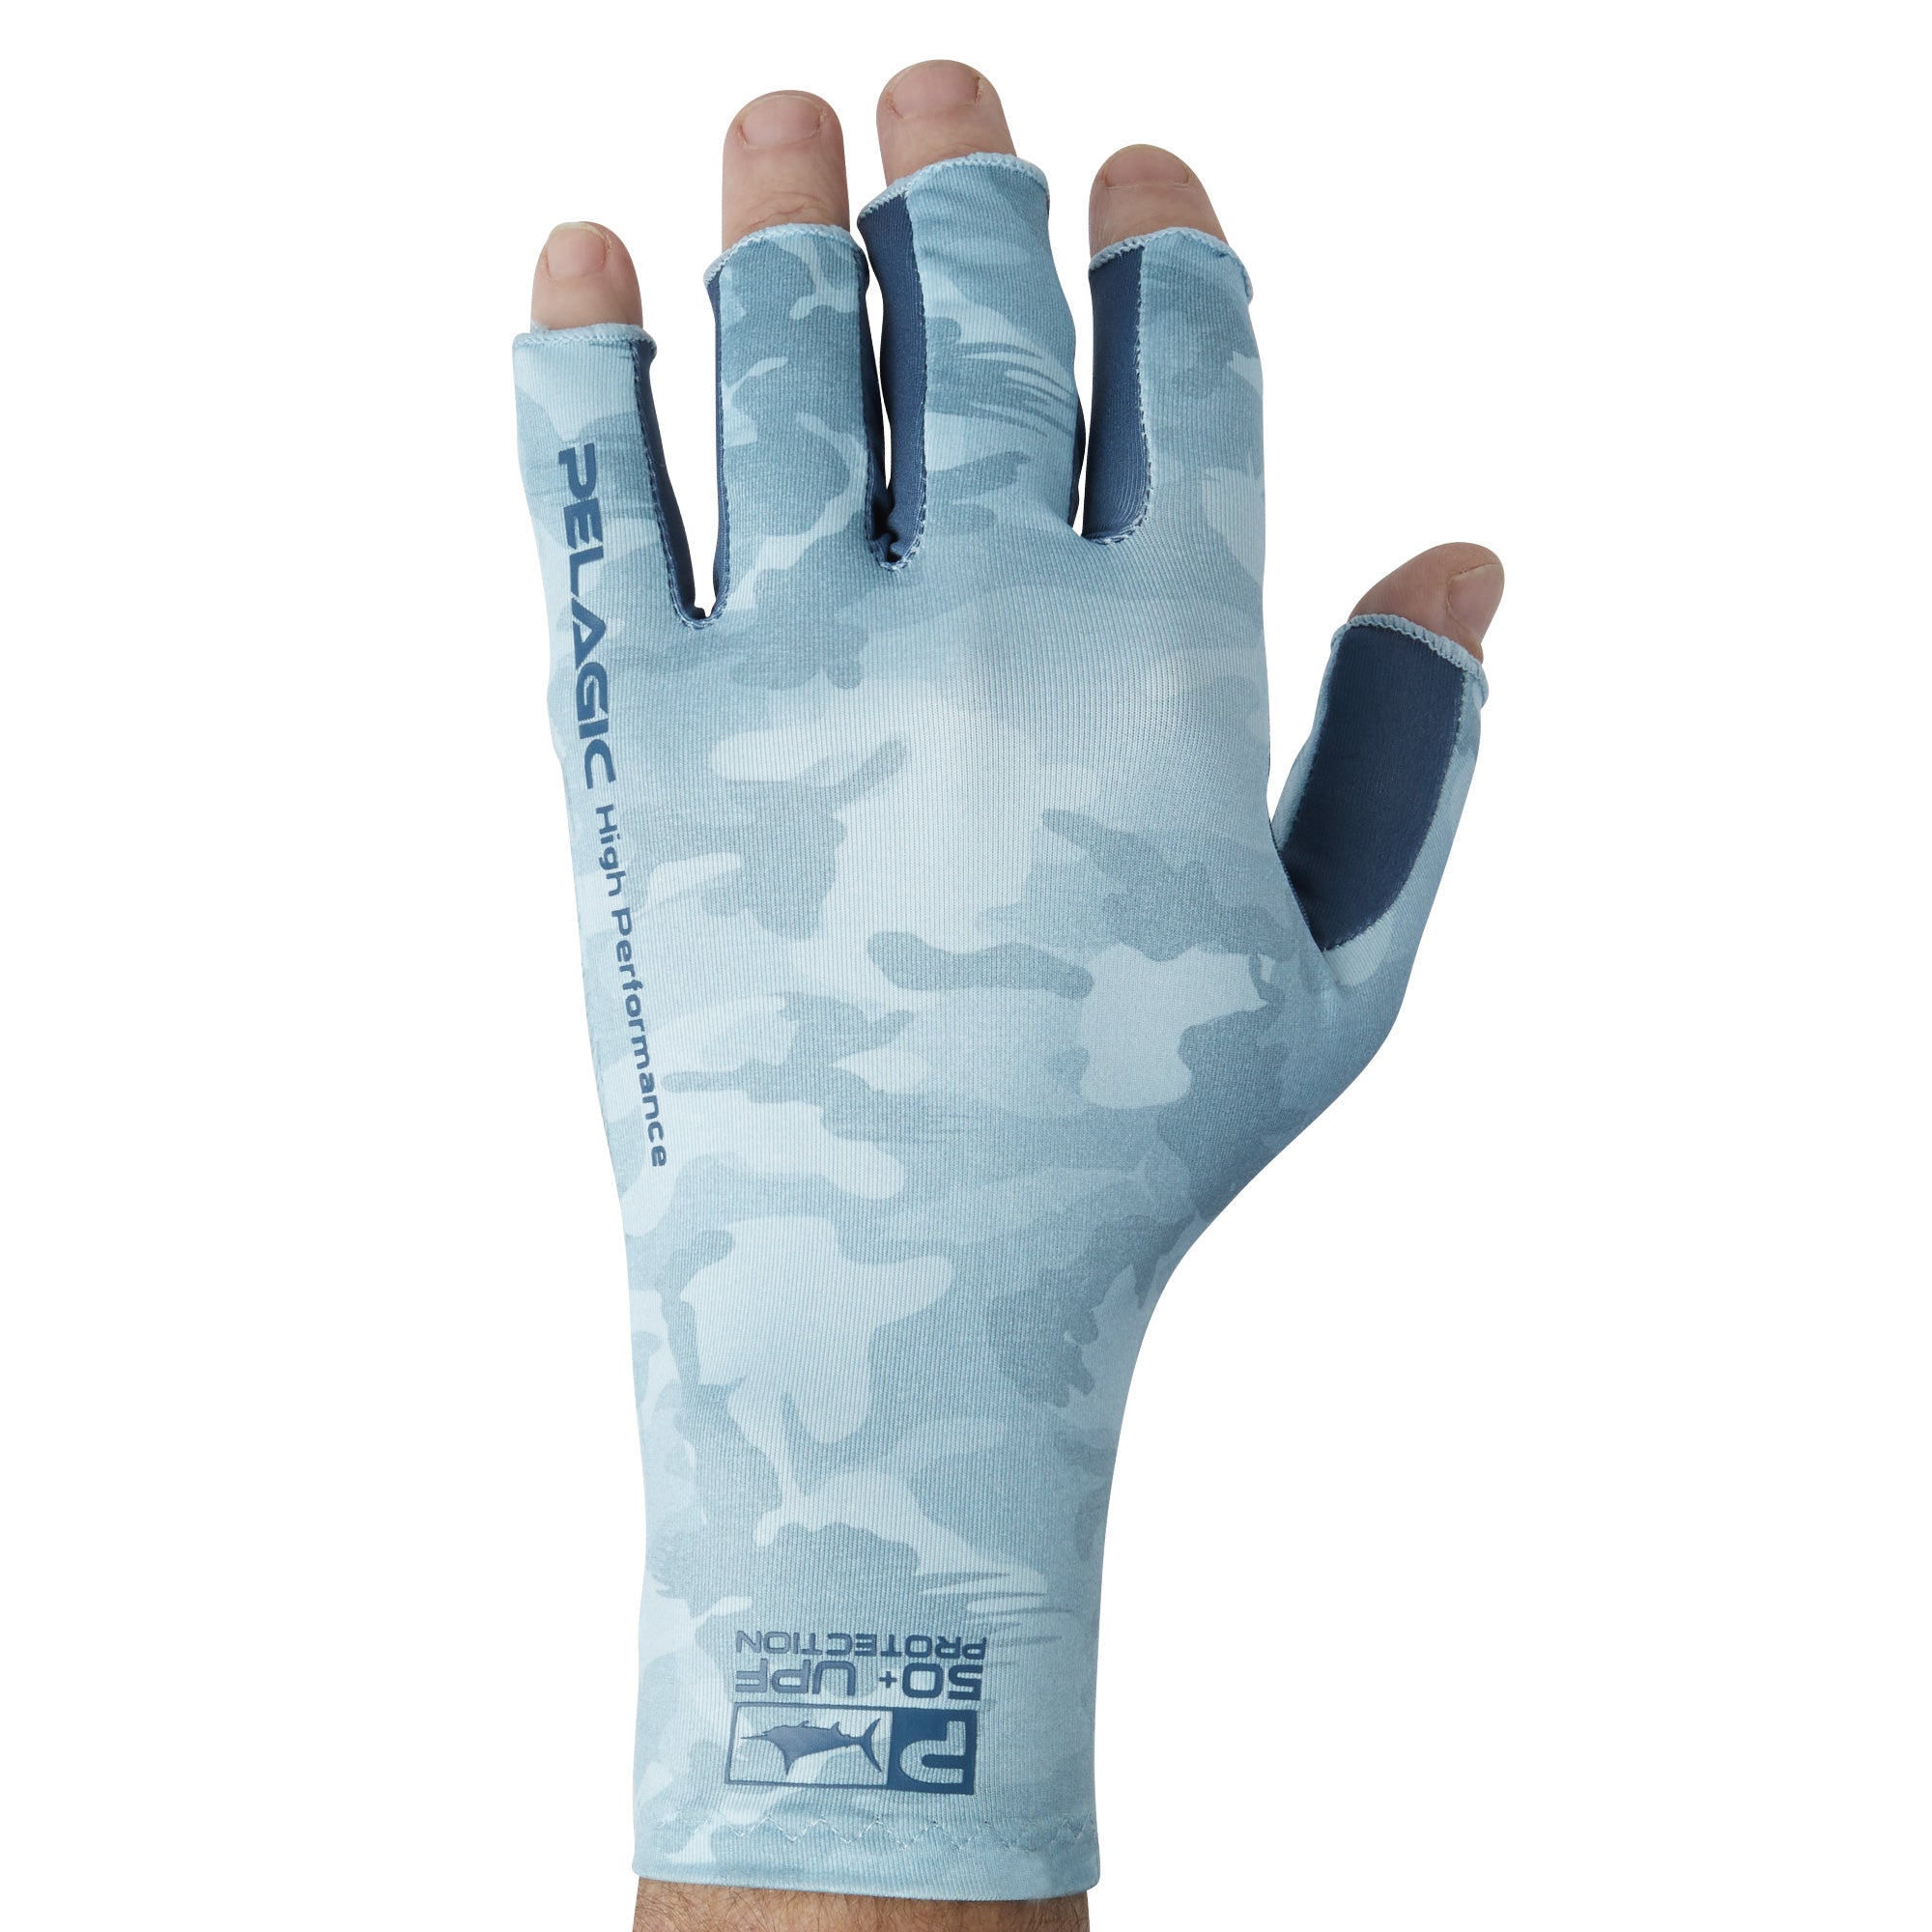 BEACE Fishing Gloves,Sun Gloves for Men & Women,Sun UV Protection